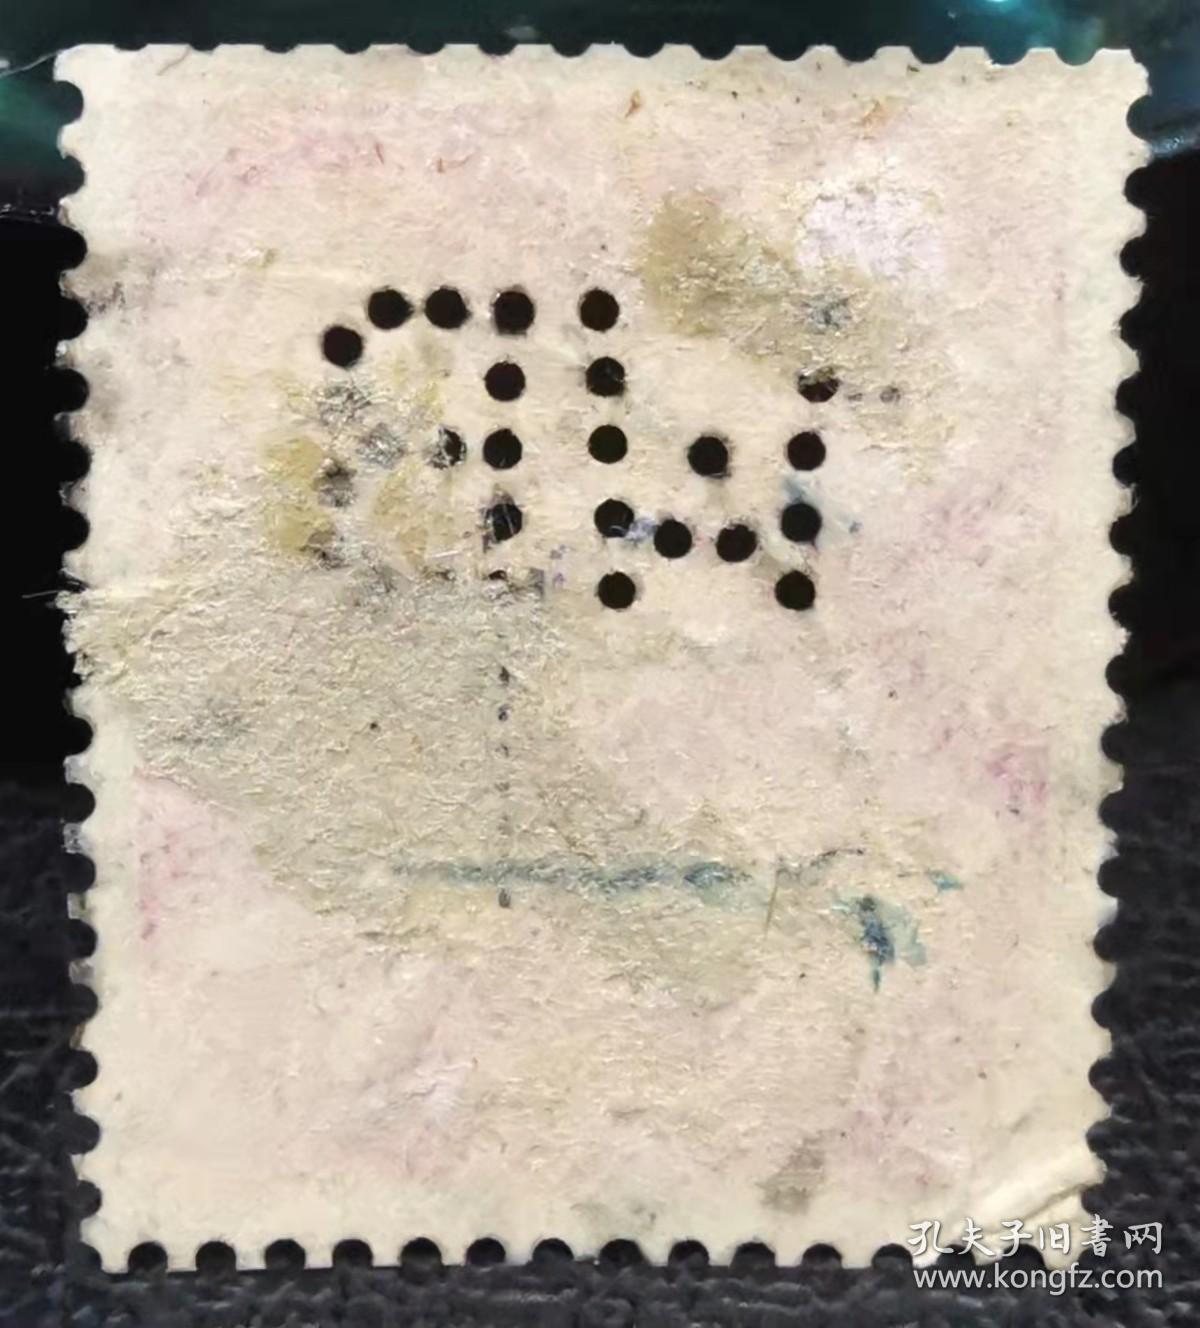 德国1928年凿孔邮票 社会民主党领袖埃伯特 字母“WB”上品信销